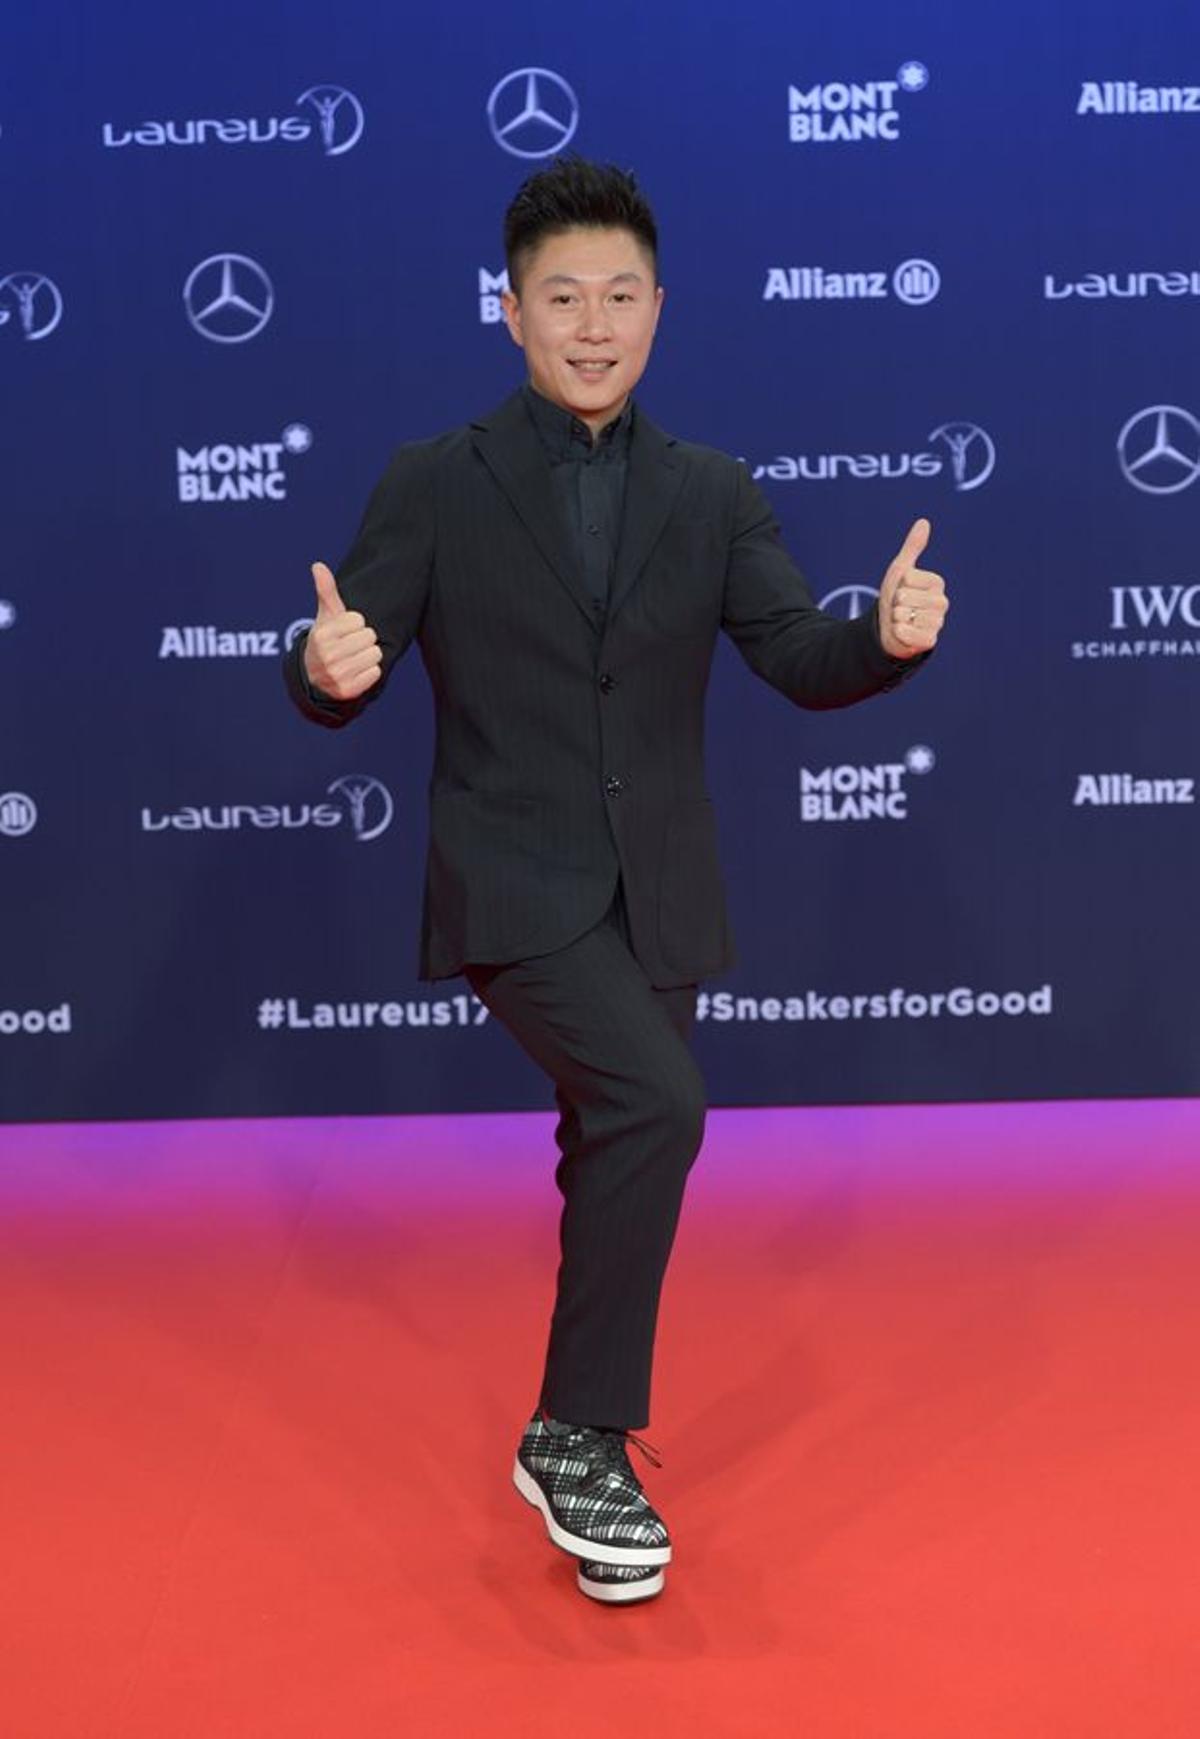 Premios Laureus 2017: Li Xiaopeng